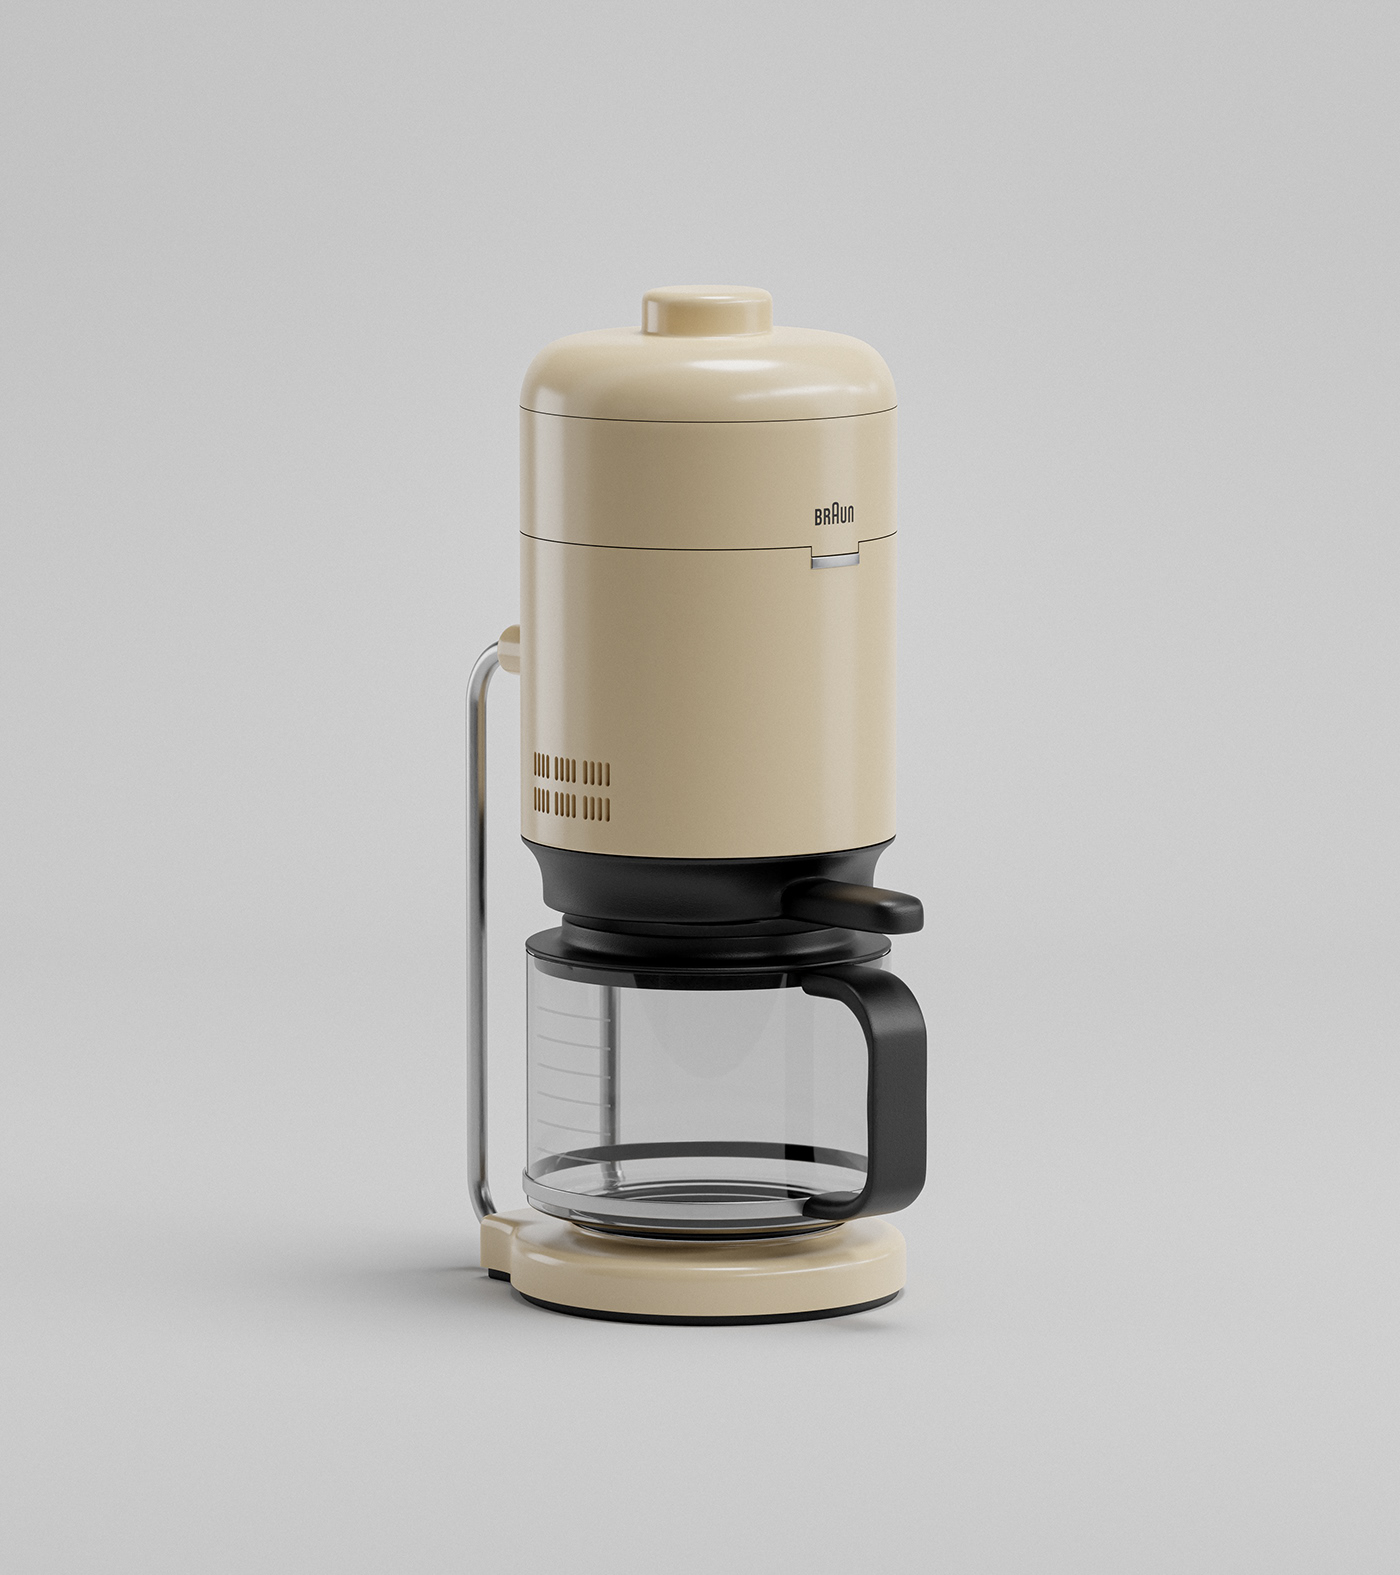 3D inspiration - Braun Coffee Maker